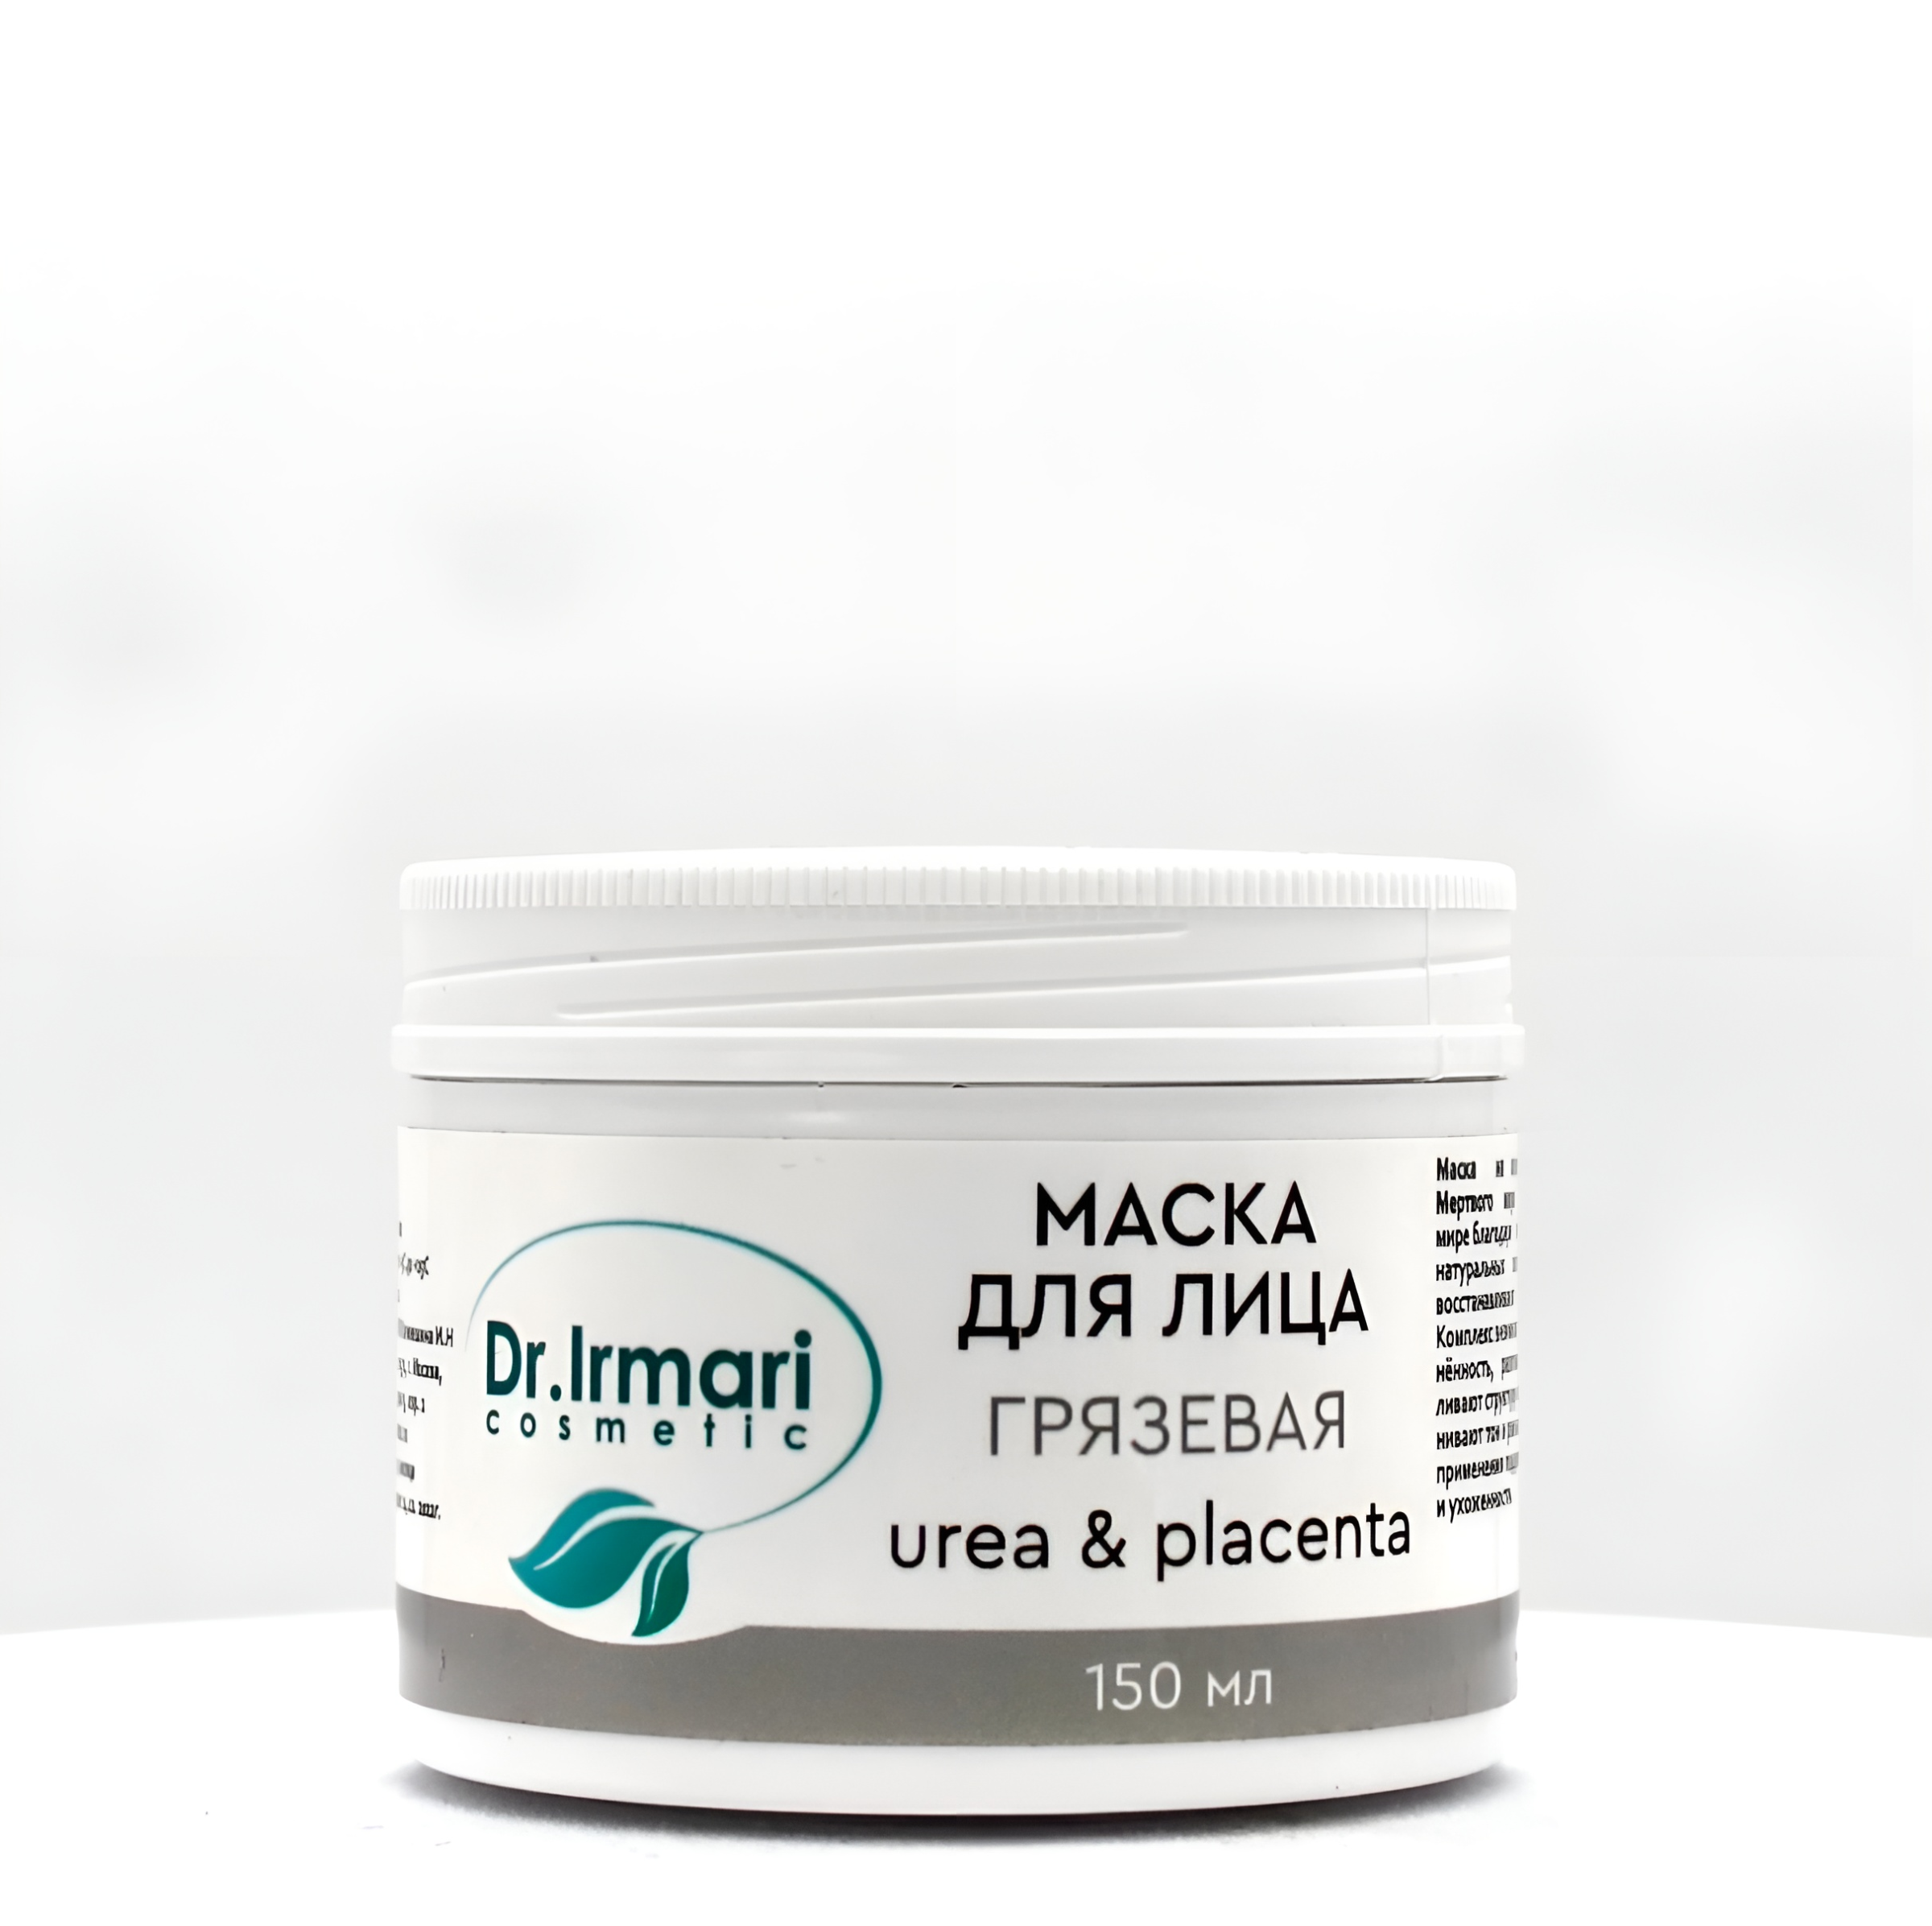 Маска для лица Dr.Irmari cosmetic Urea & Placenta Грязевая 150 мл журнал в мире минералов том 24 выпуск 2 2019